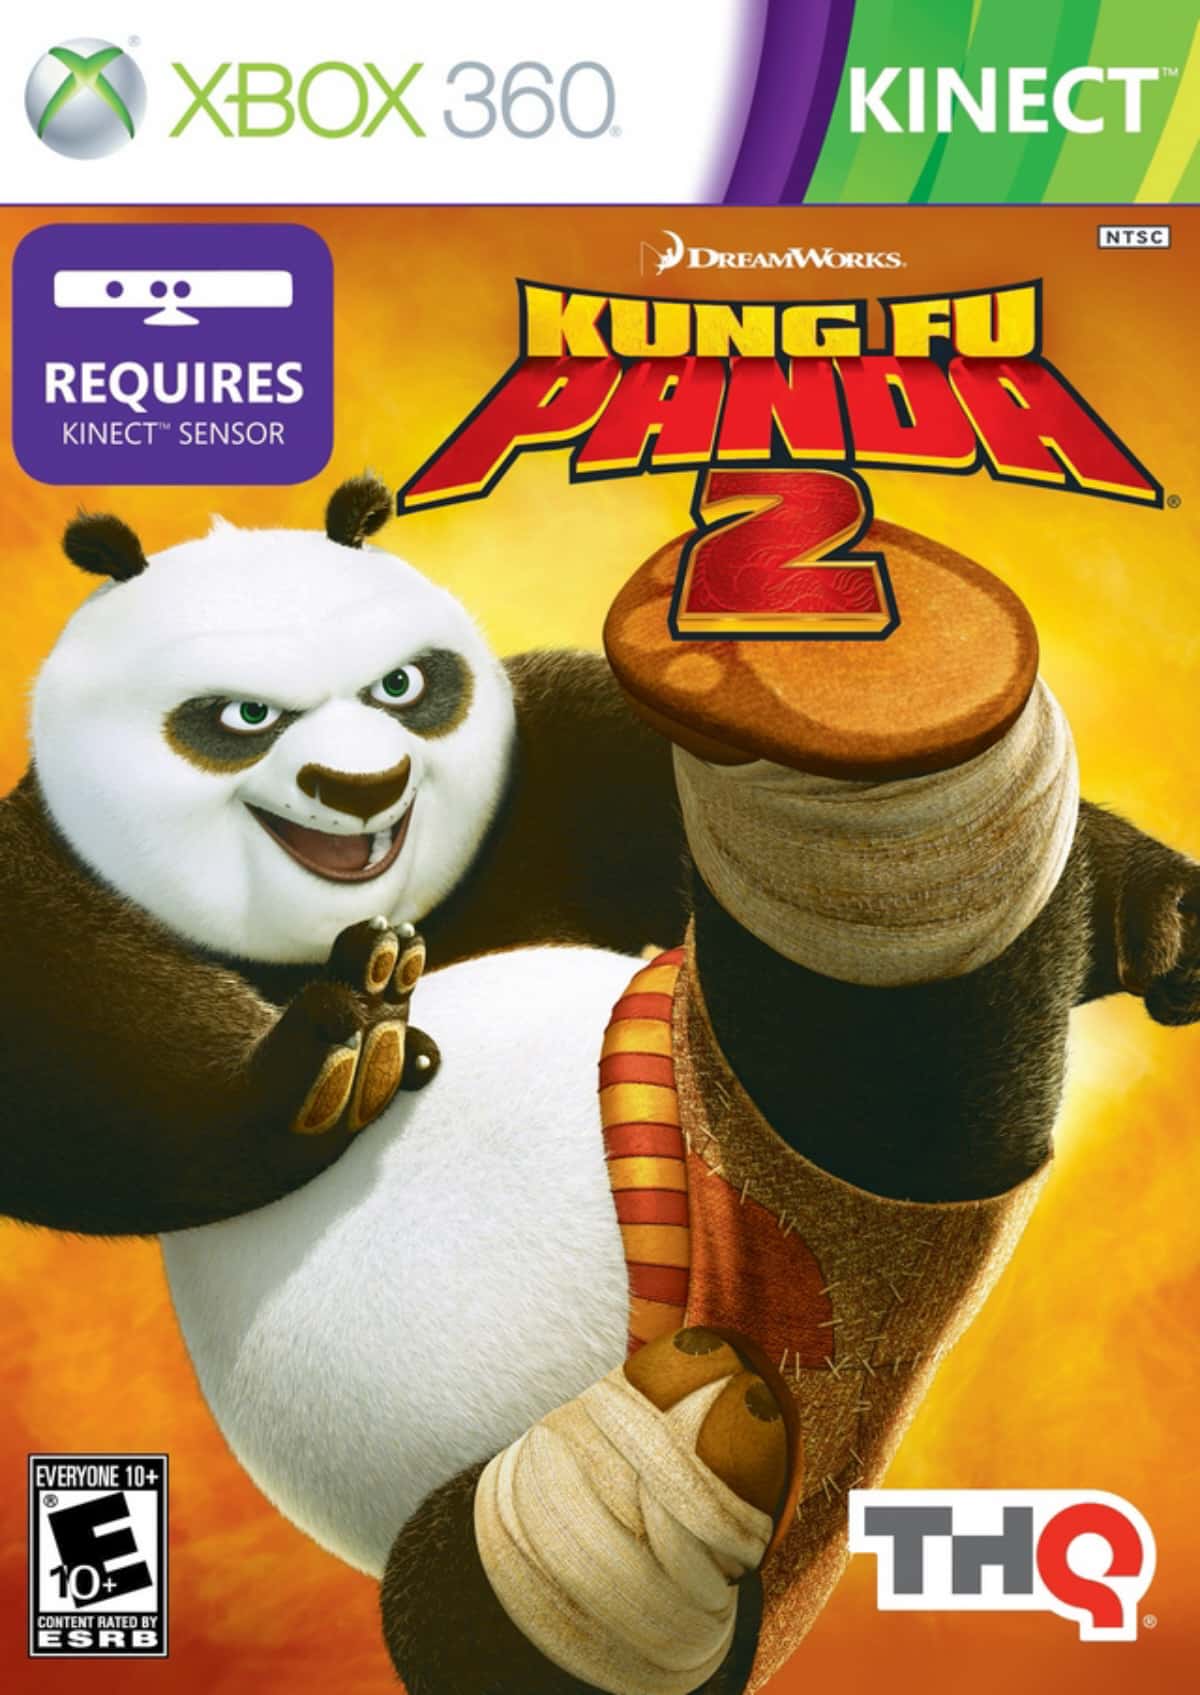 Kung Fu Panda 2 - Trailer - YouTube